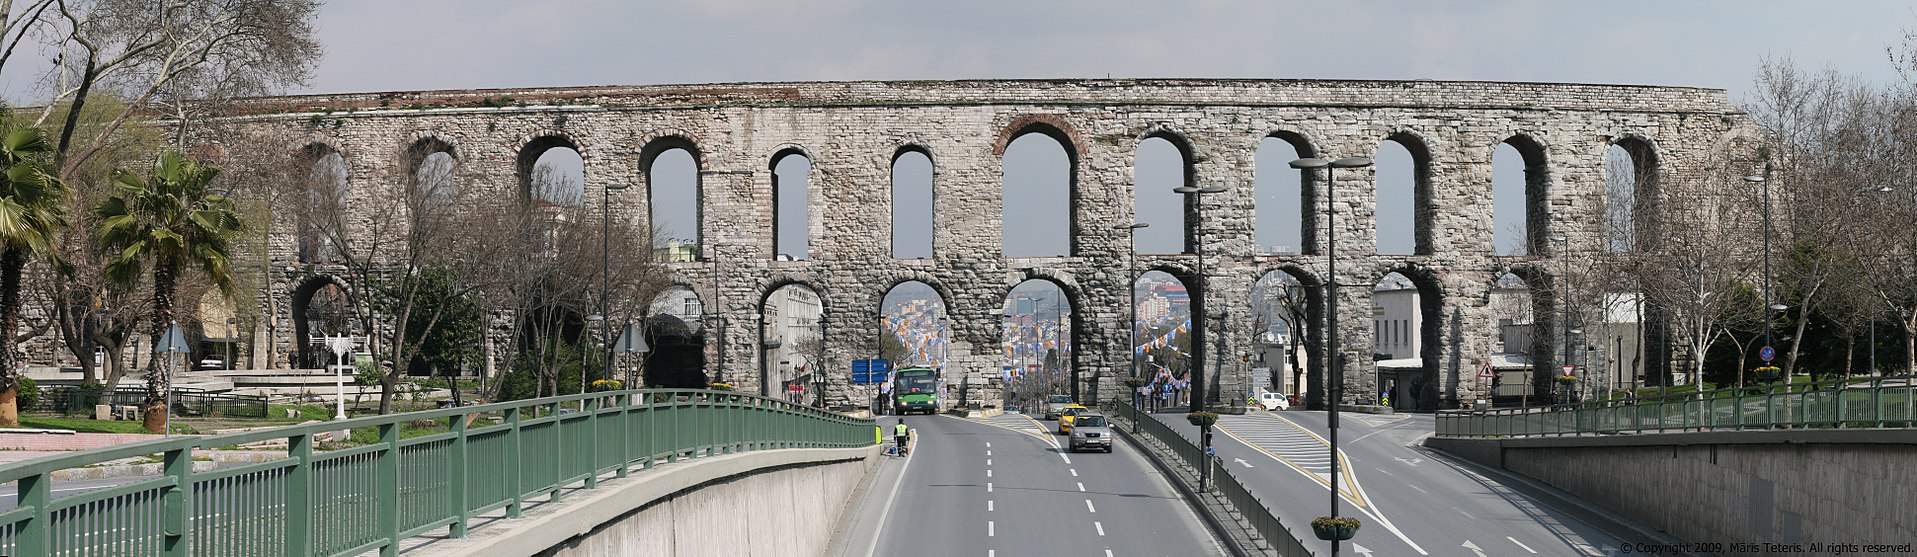 トルコに現存するヴァレンス水道橋の一部